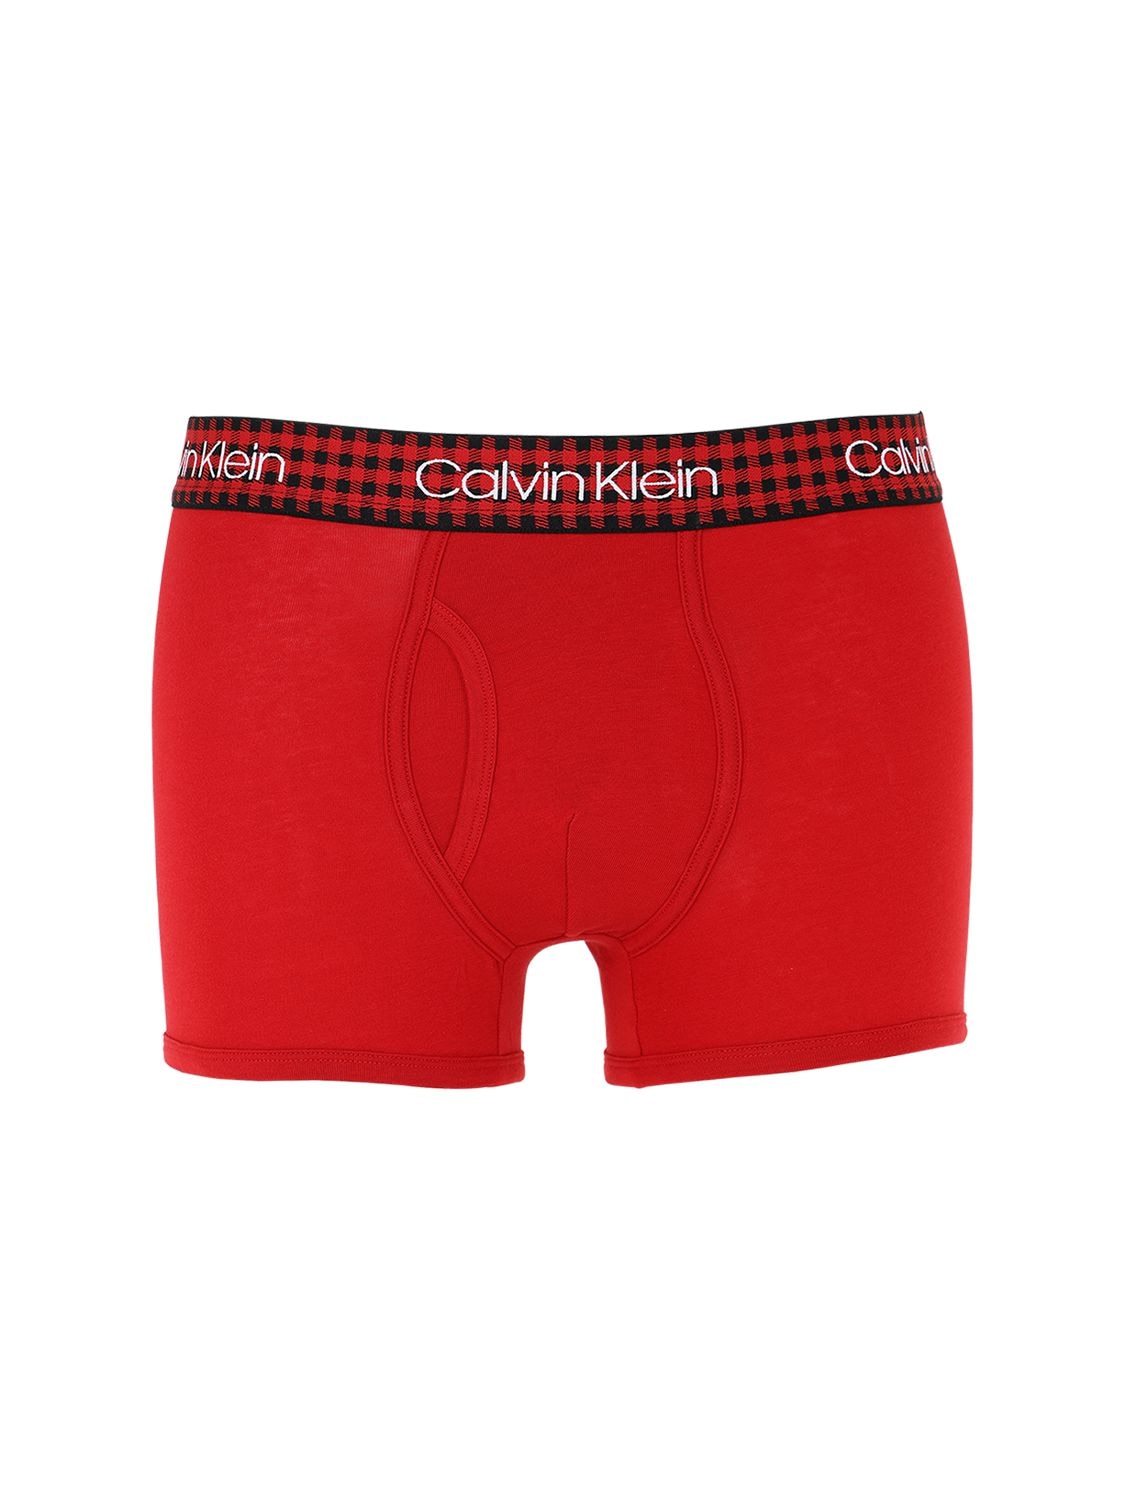 Calvin Klein Underwear Check Logo Elastic Briefs In Red